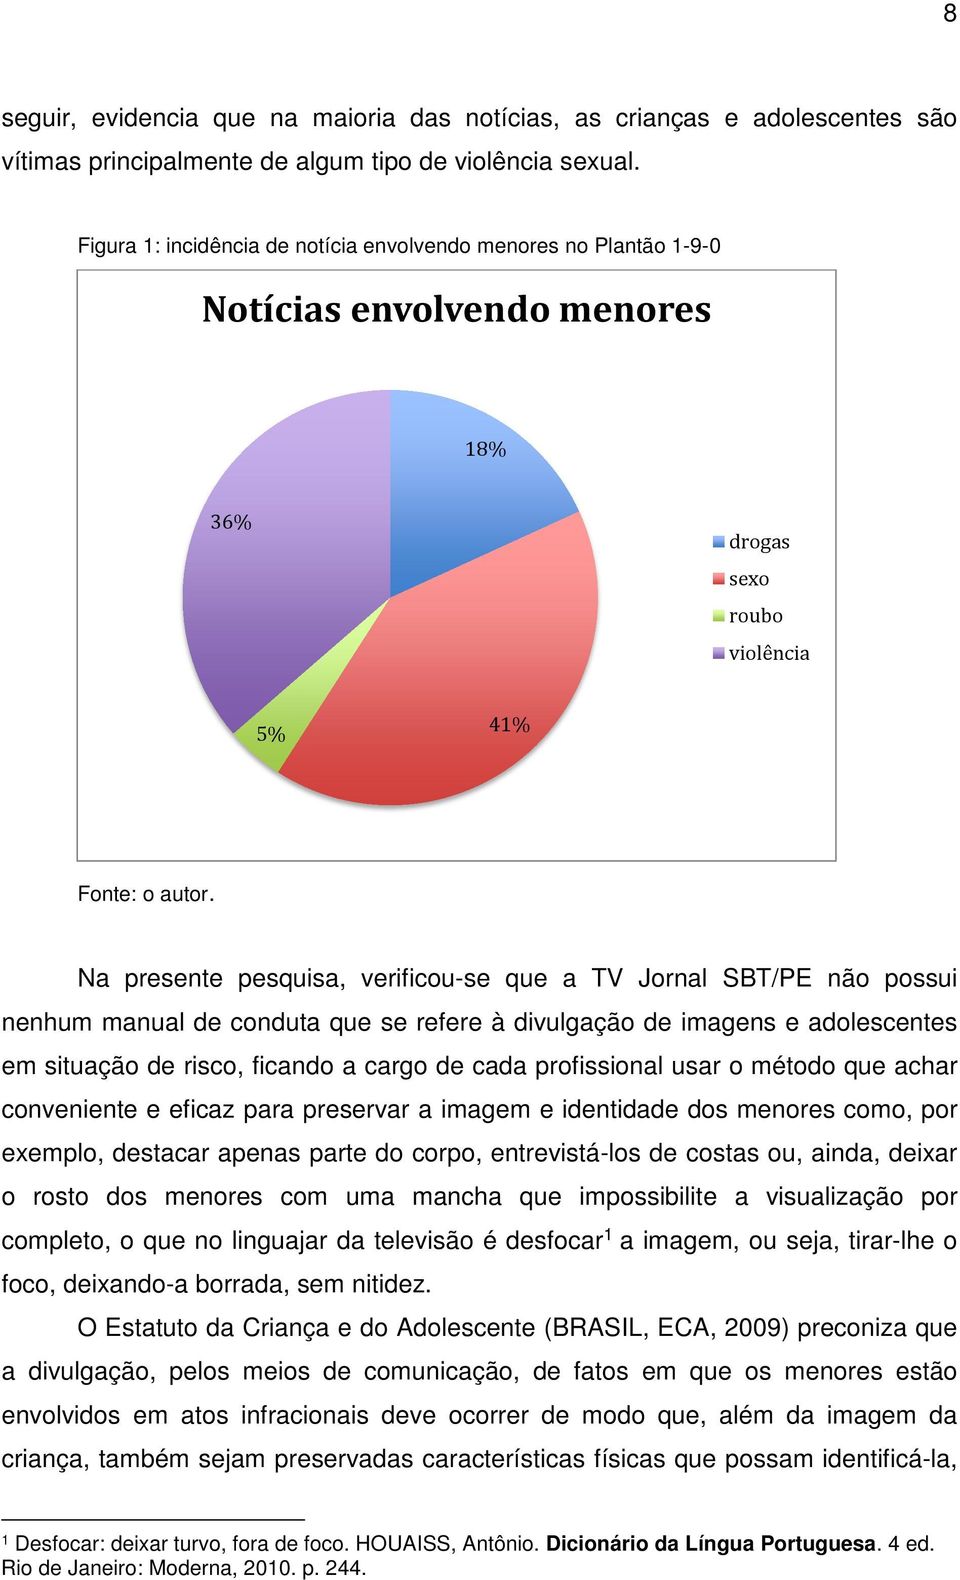 Na presente pesquisa, verificou-se que a TV Jornal SBT/PE não possui nenhum manual de conduta que se refere à divulgação de imagens e adolescentes em situação de risco, ficando a cargo de cada